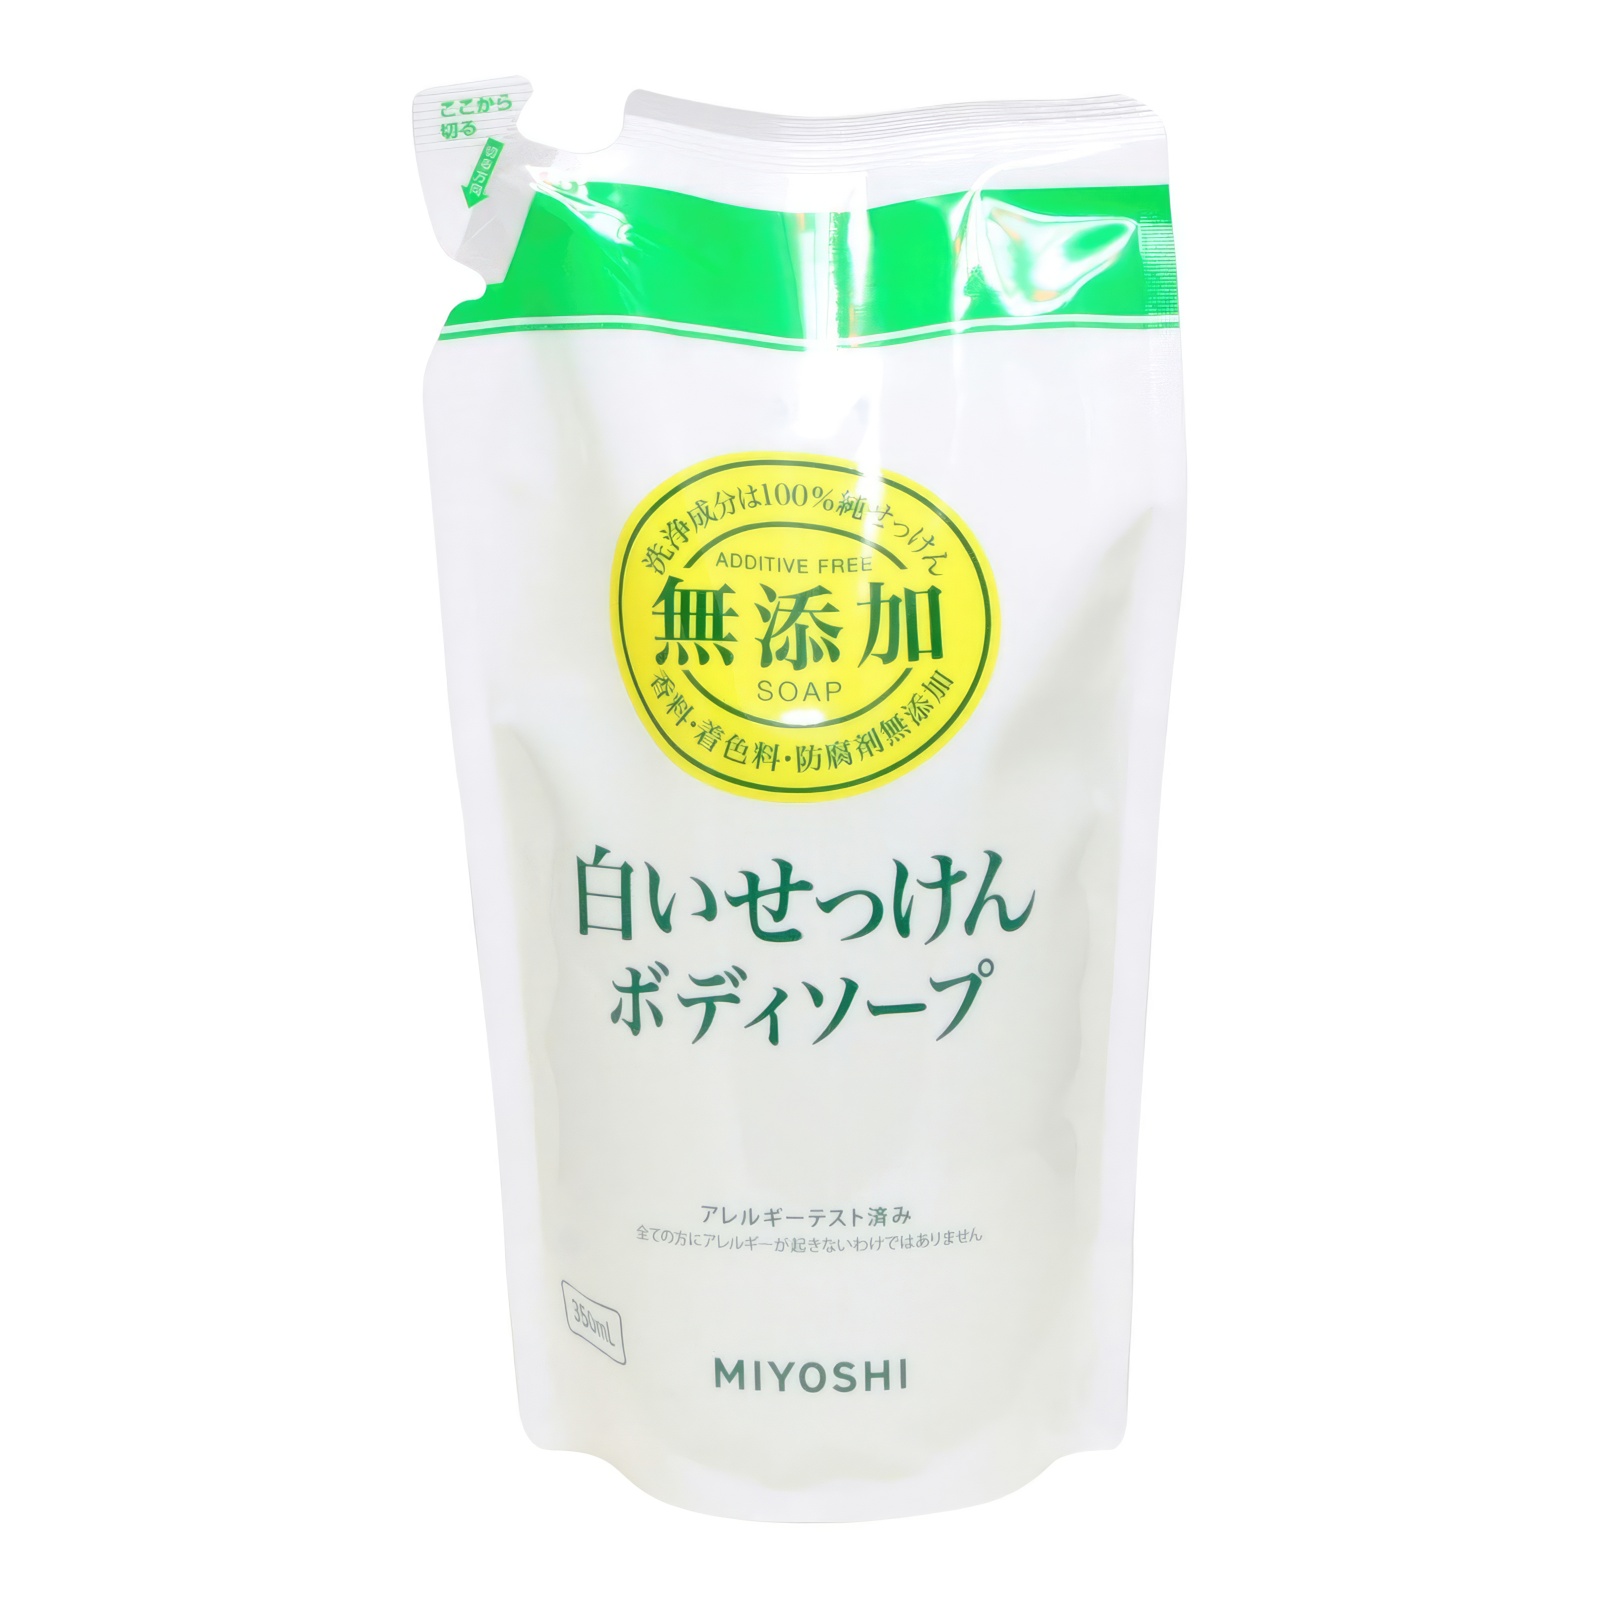 Натуральное жидкое мыло MIYOSHI эко для тела 350 мл з б мыло жидкое для рук и тела siberina можжевельник натуральное 200 мл